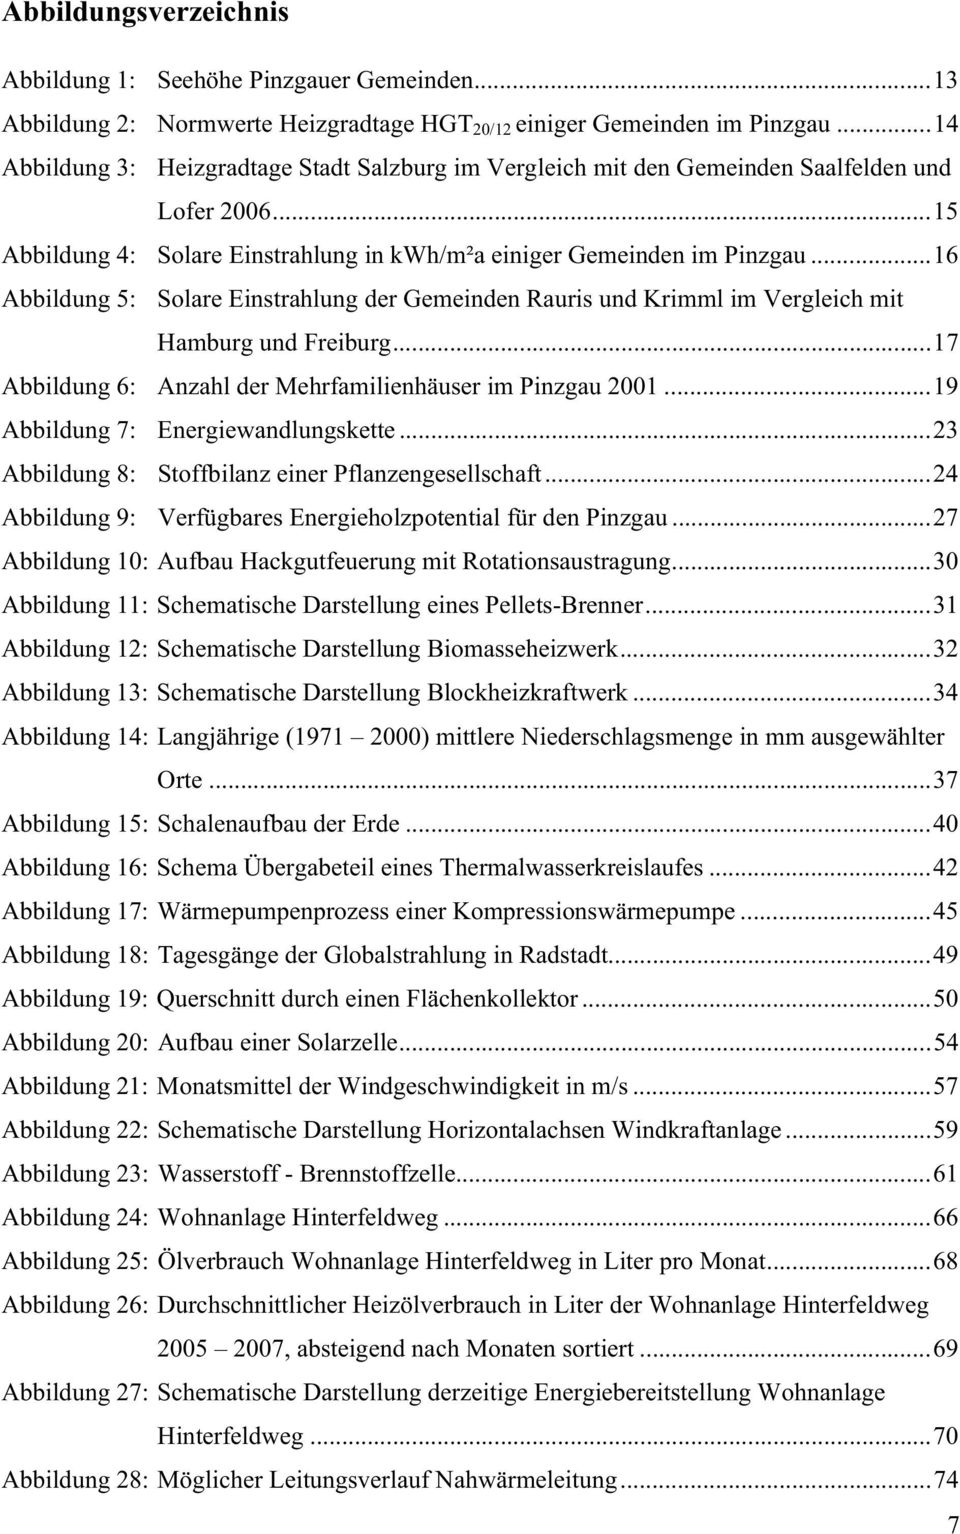 ..16 Abbildung 5: Solare Einstrahlung der Gemeinden Rauris und Krimml im Vergleich mit Hamburg und Freiburg...17 Abbildung 6: Anzahl der Mehrfamilienhäuser im Pinzgau 2001.